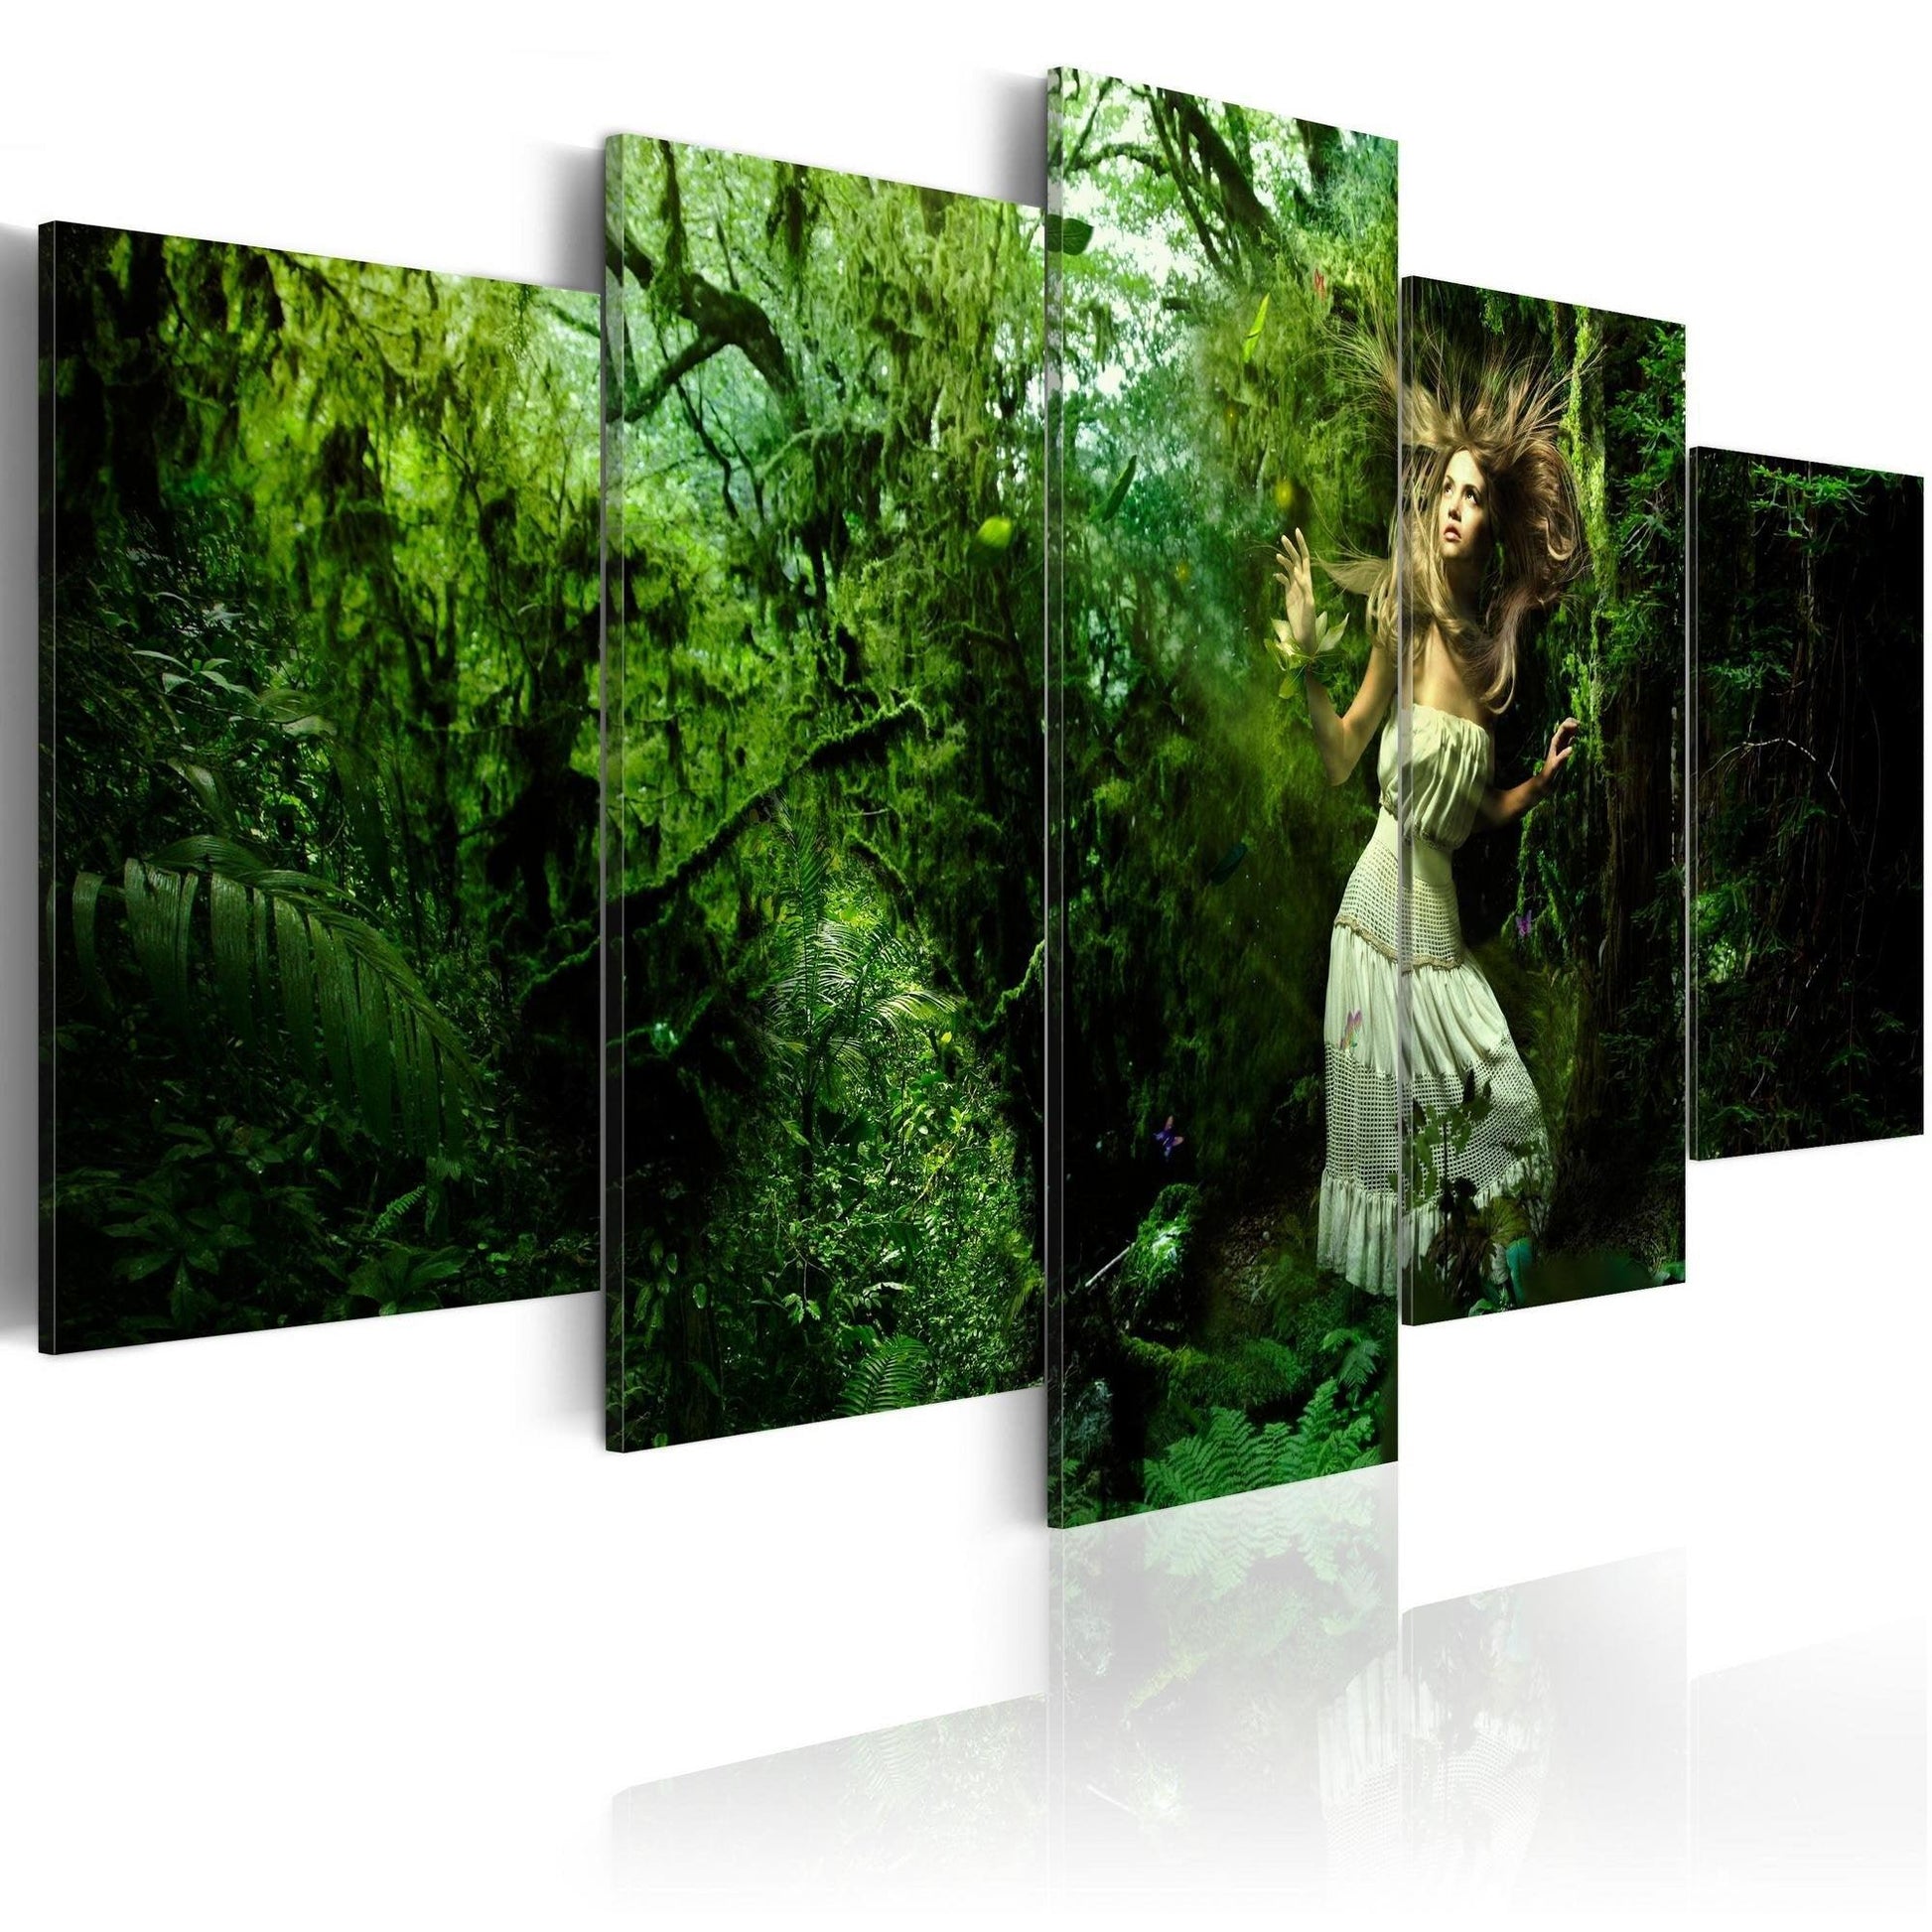 Canvas Print - Lost in greenery - www.trendingbestsellers.com